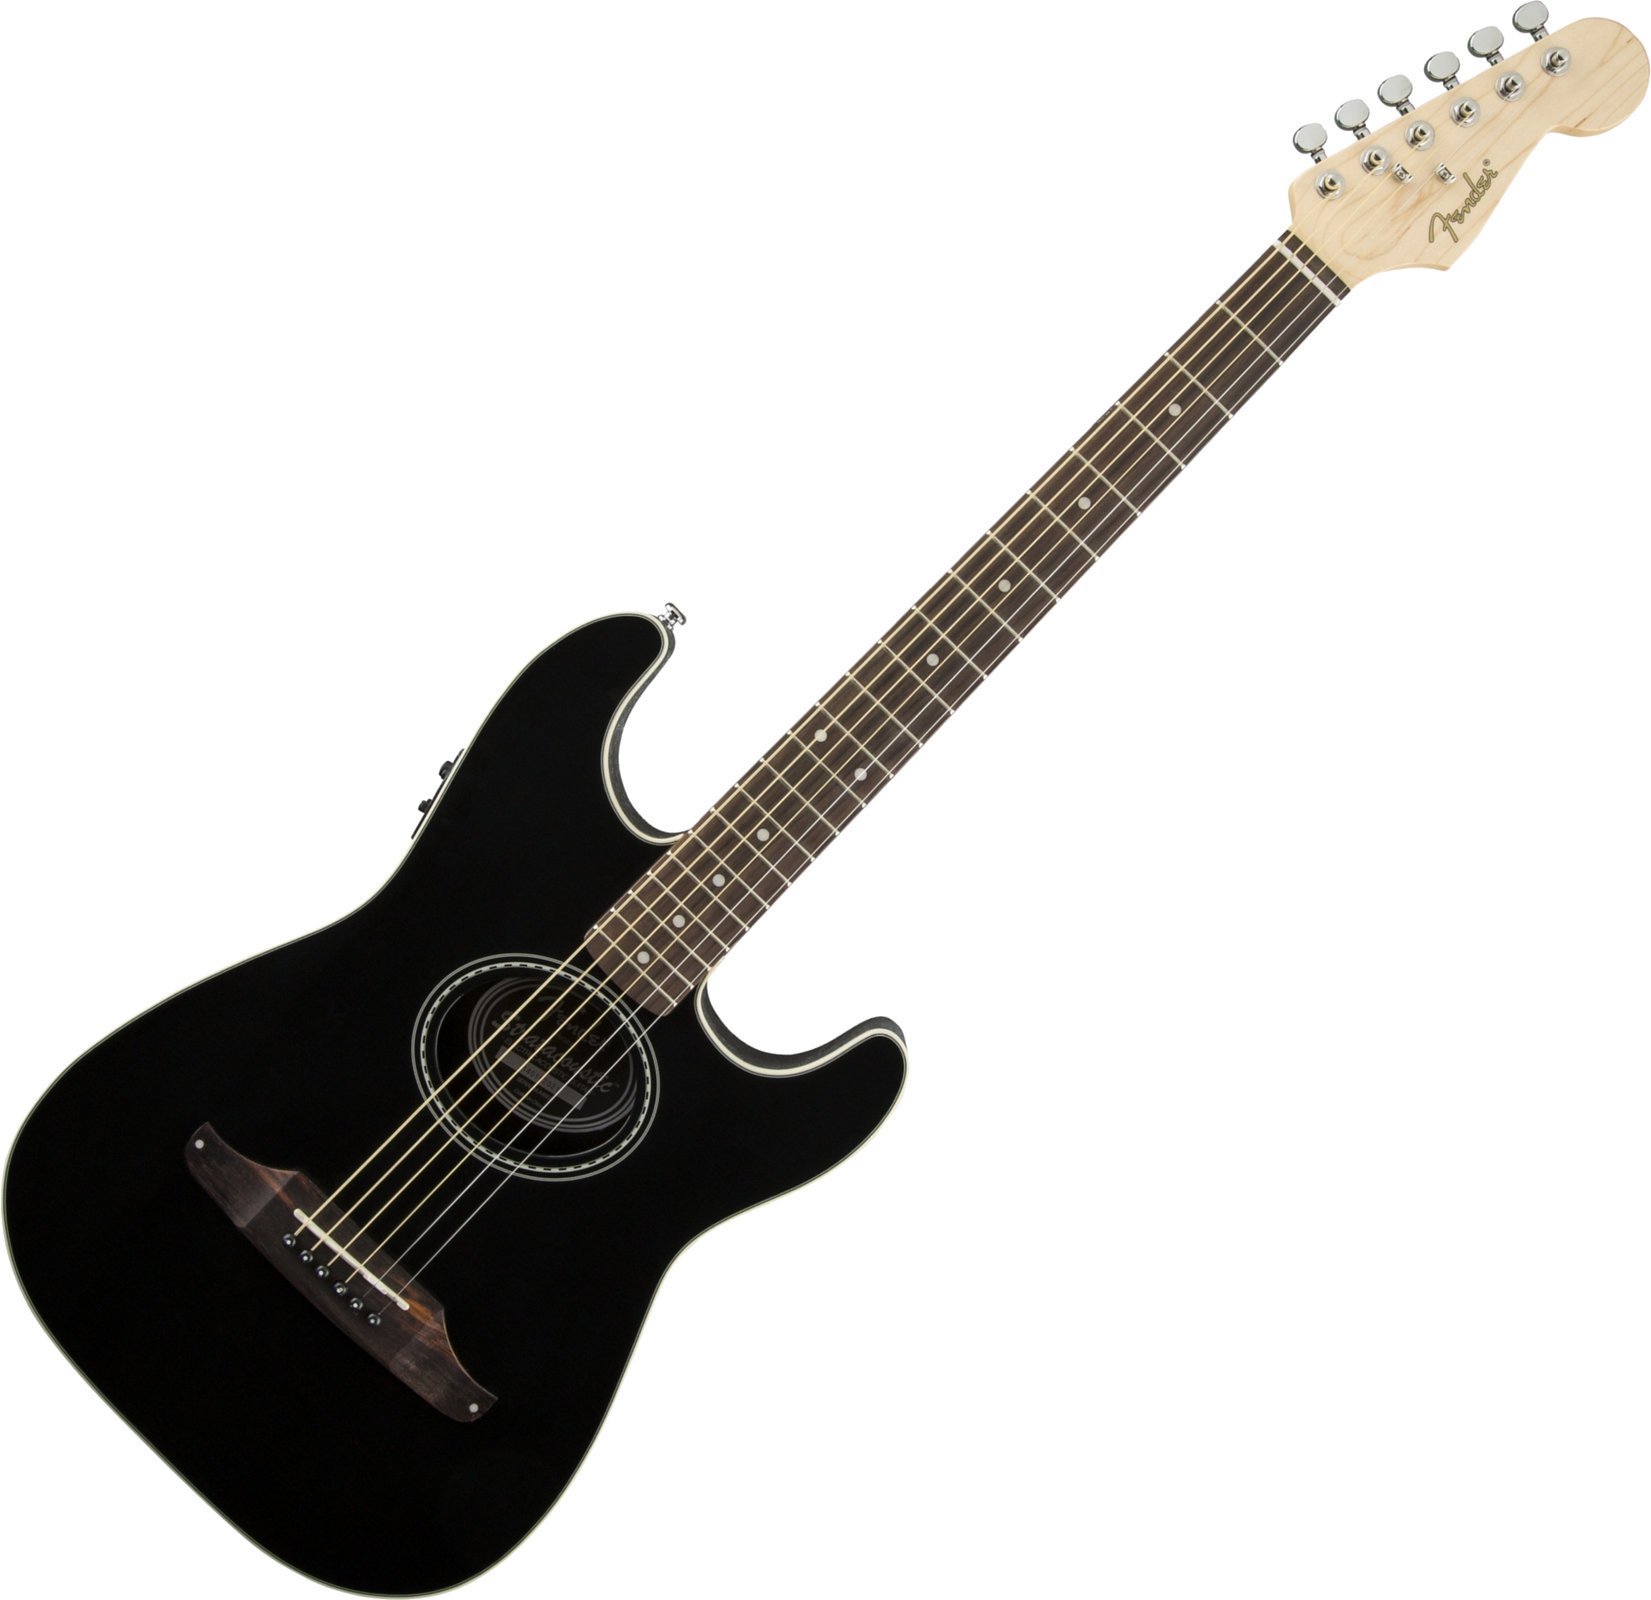 Ηλεκτροακουστική Κιθάρα Fender Stratacoustic Μαύρο